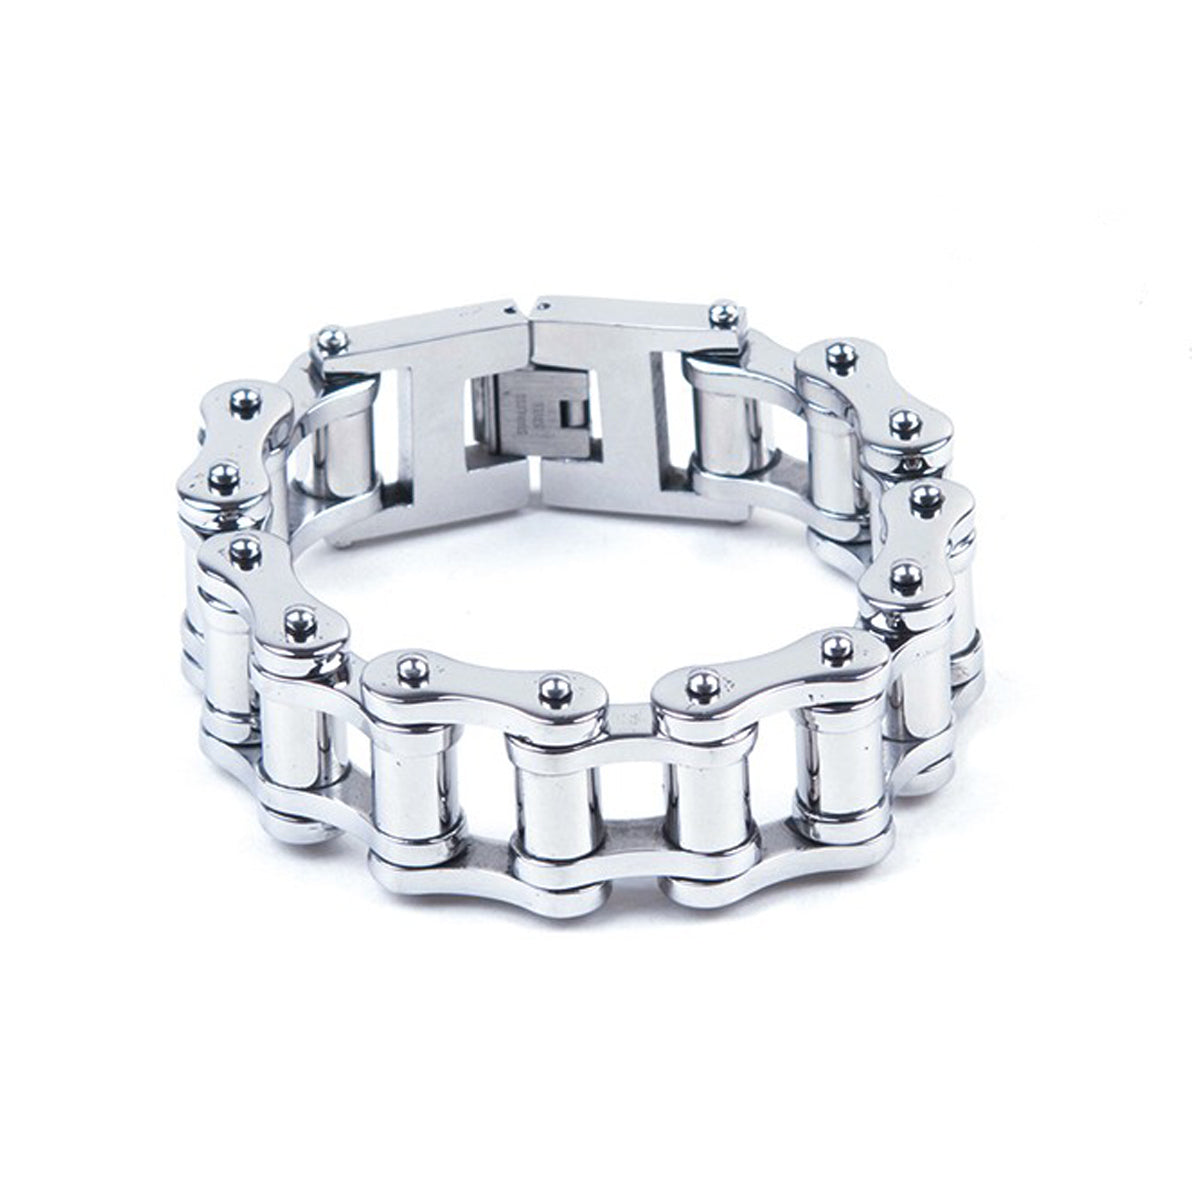 1" Stainless Steel Bracelet